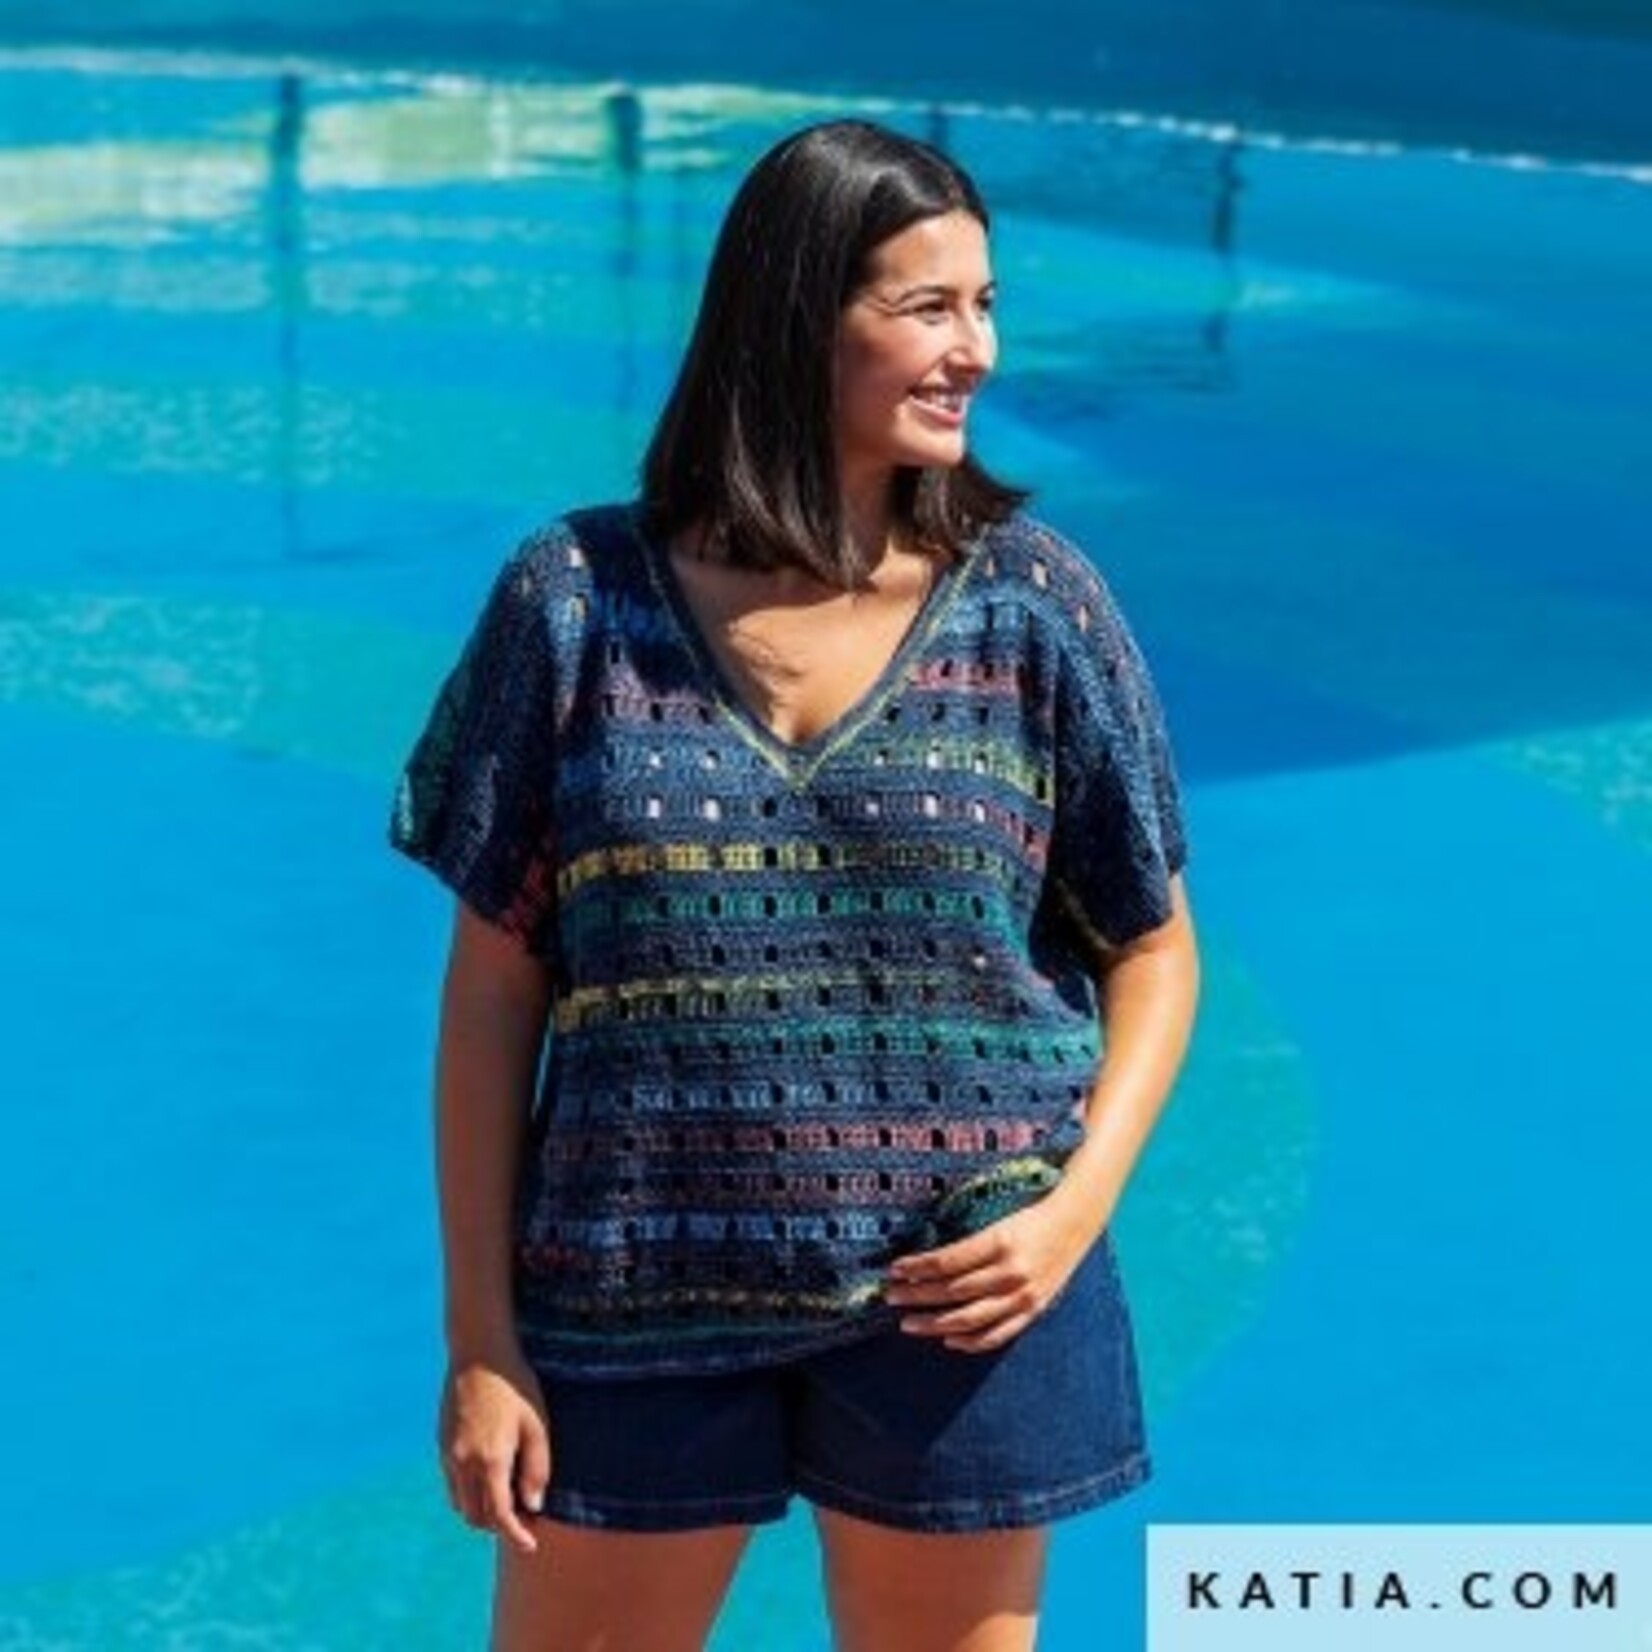 Katia Katia  100% Crochet n° 117